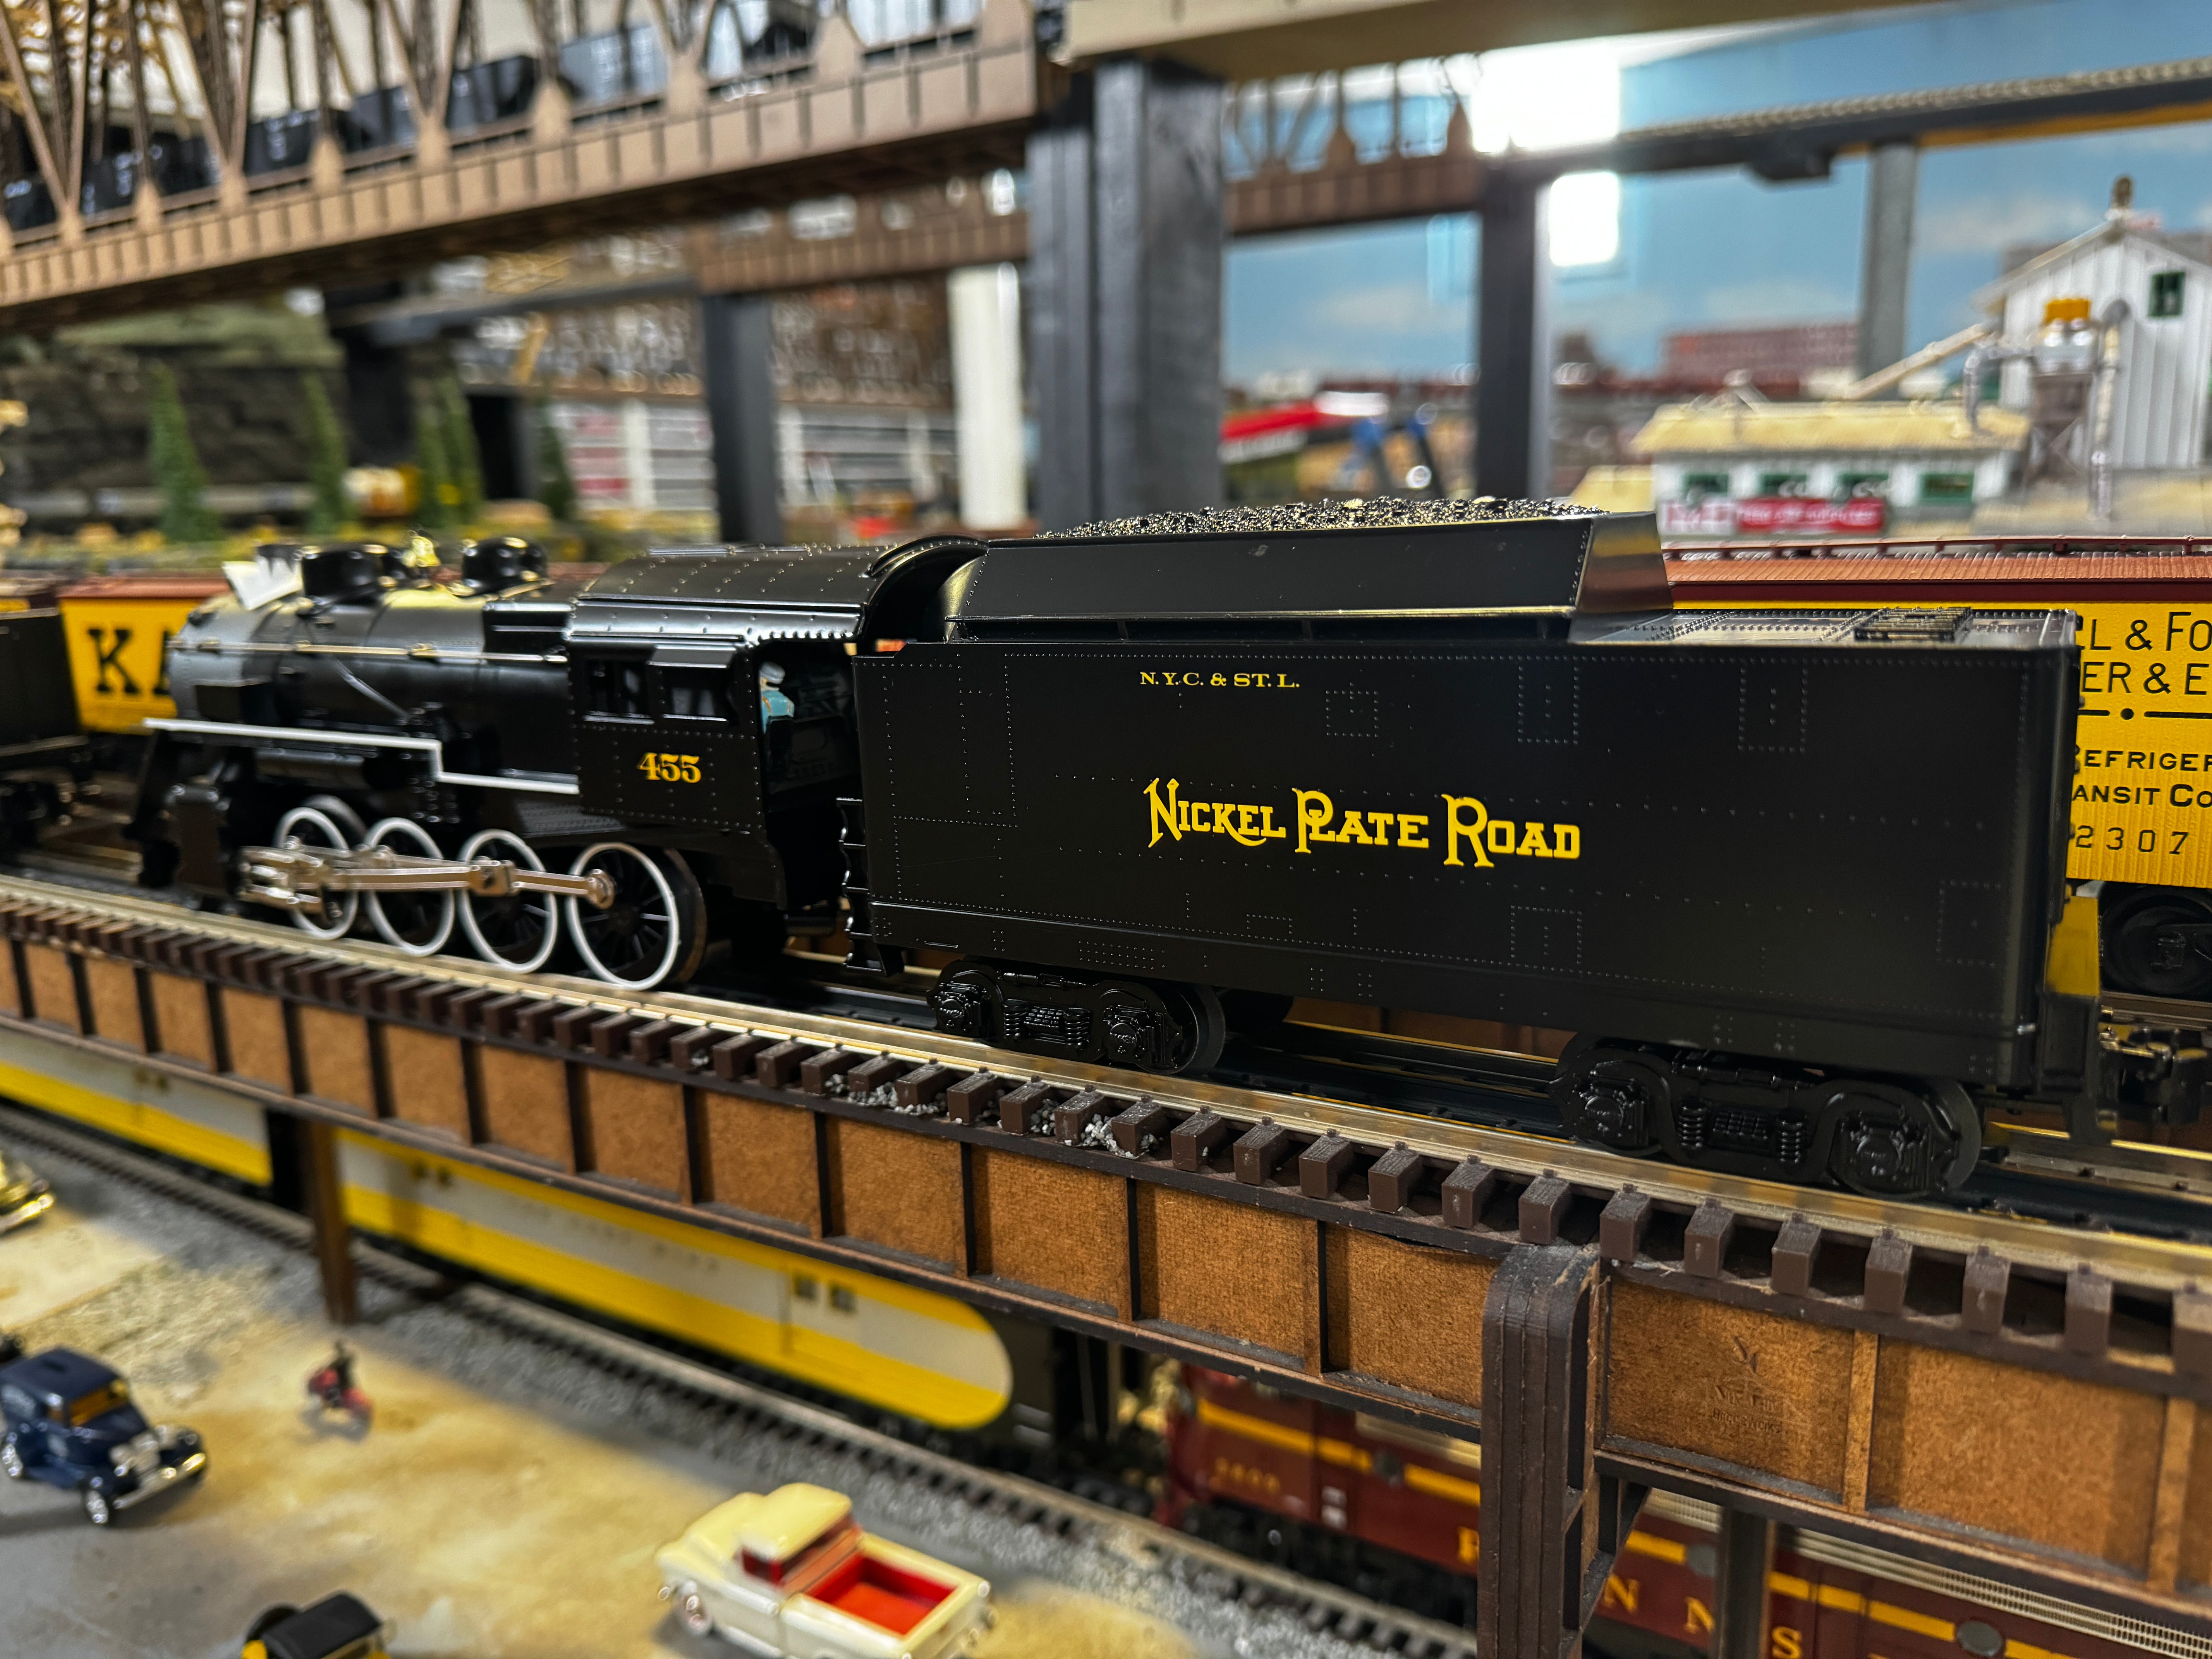 Lionel 2332100 - LionChief 2-8-0 Steam Locomotive "Nickel Plate Road" #455